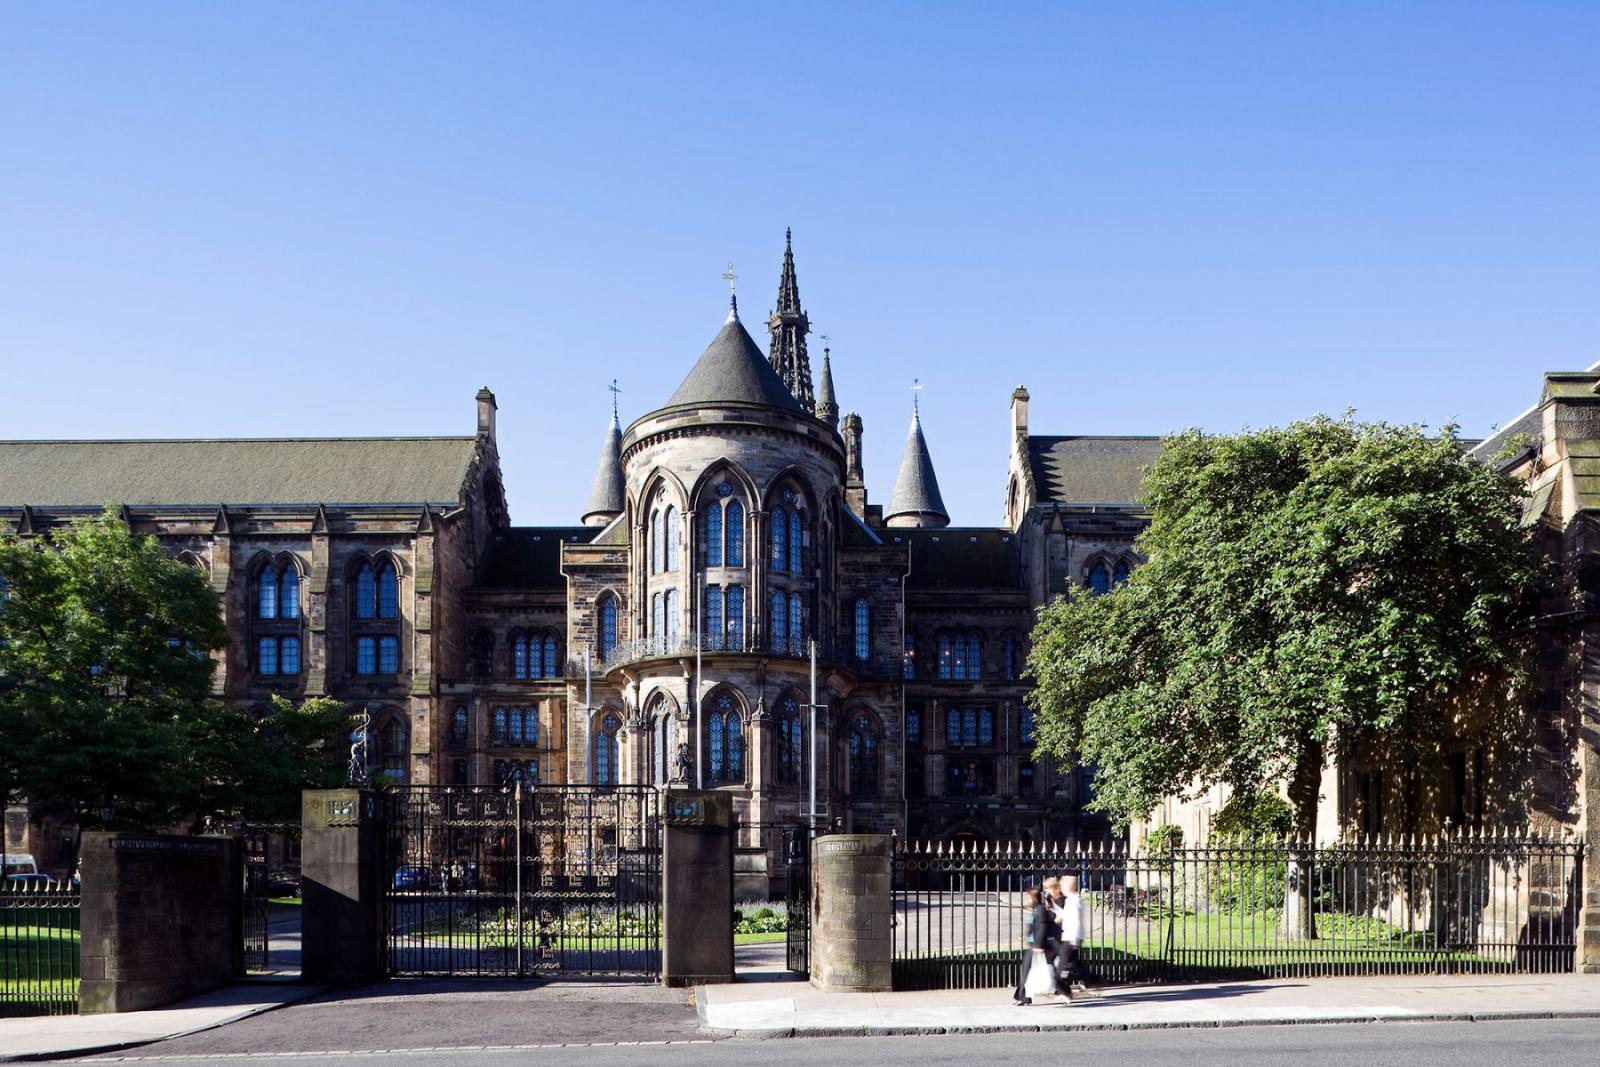 The Hunterian is een gebouw van de universiteit van Glasgow met daarin een museum gevestigd